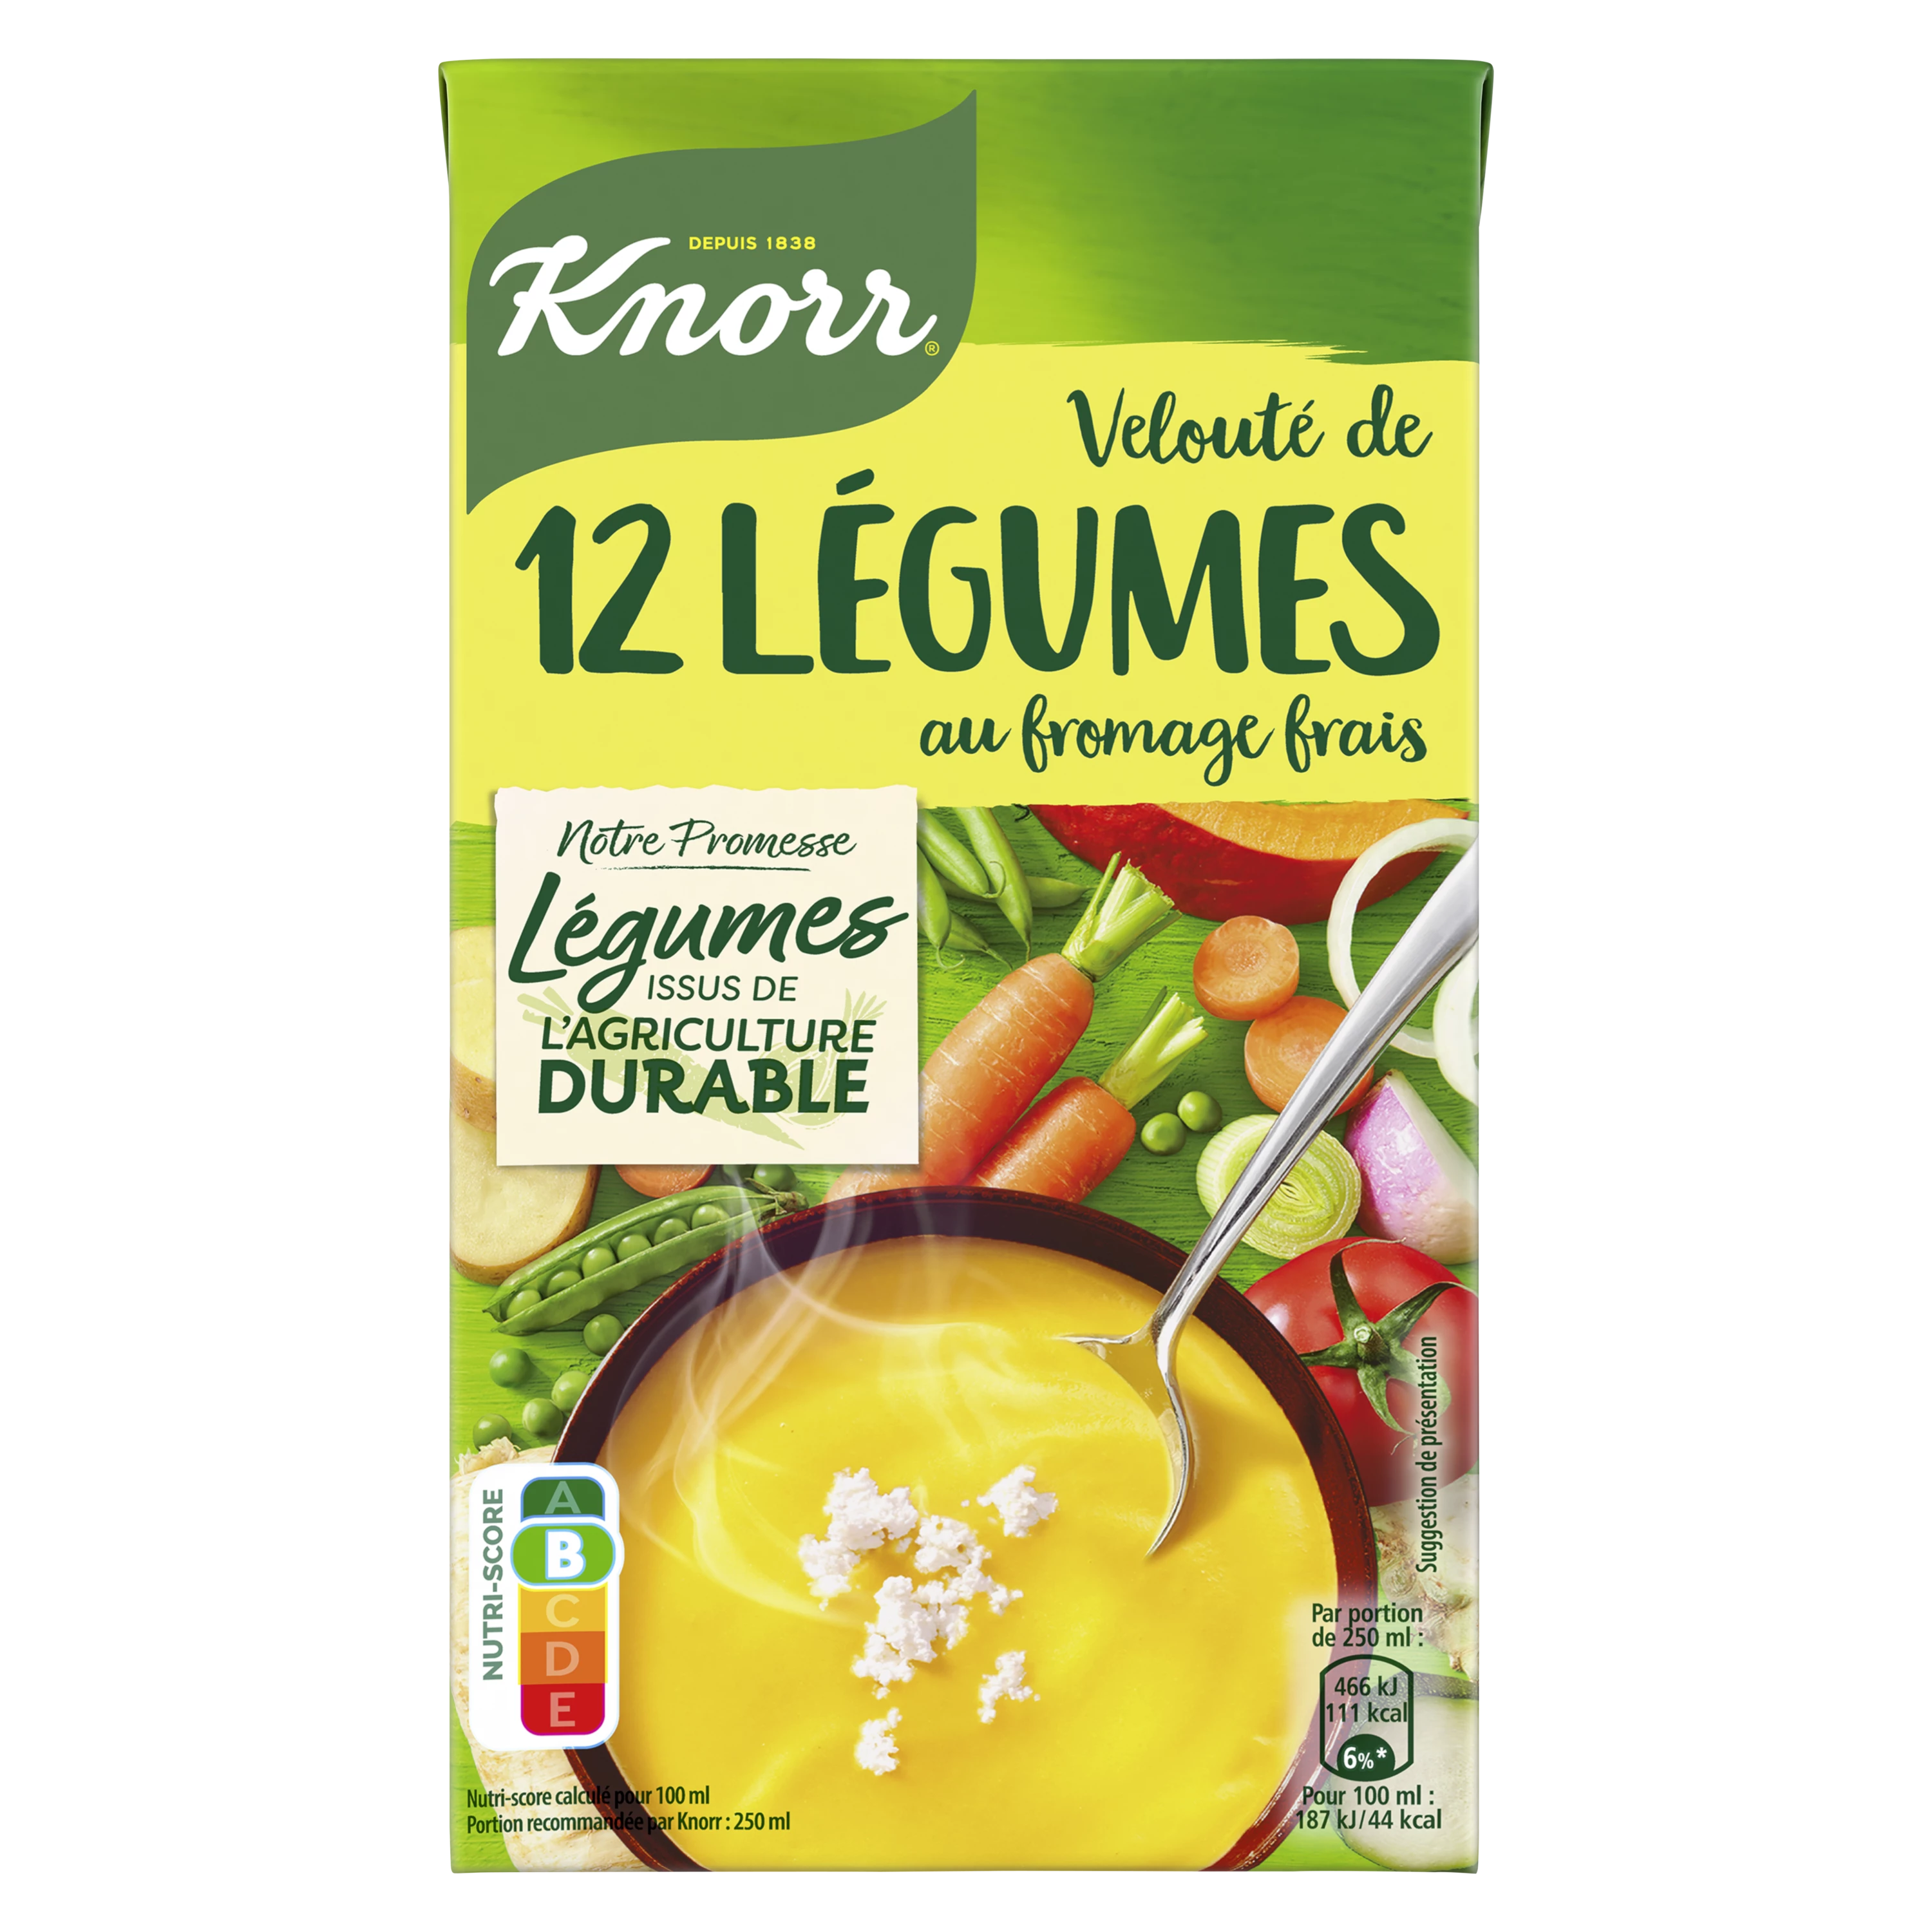 Velouté 12 Légumes Fromage Frais, 1l - KNORR